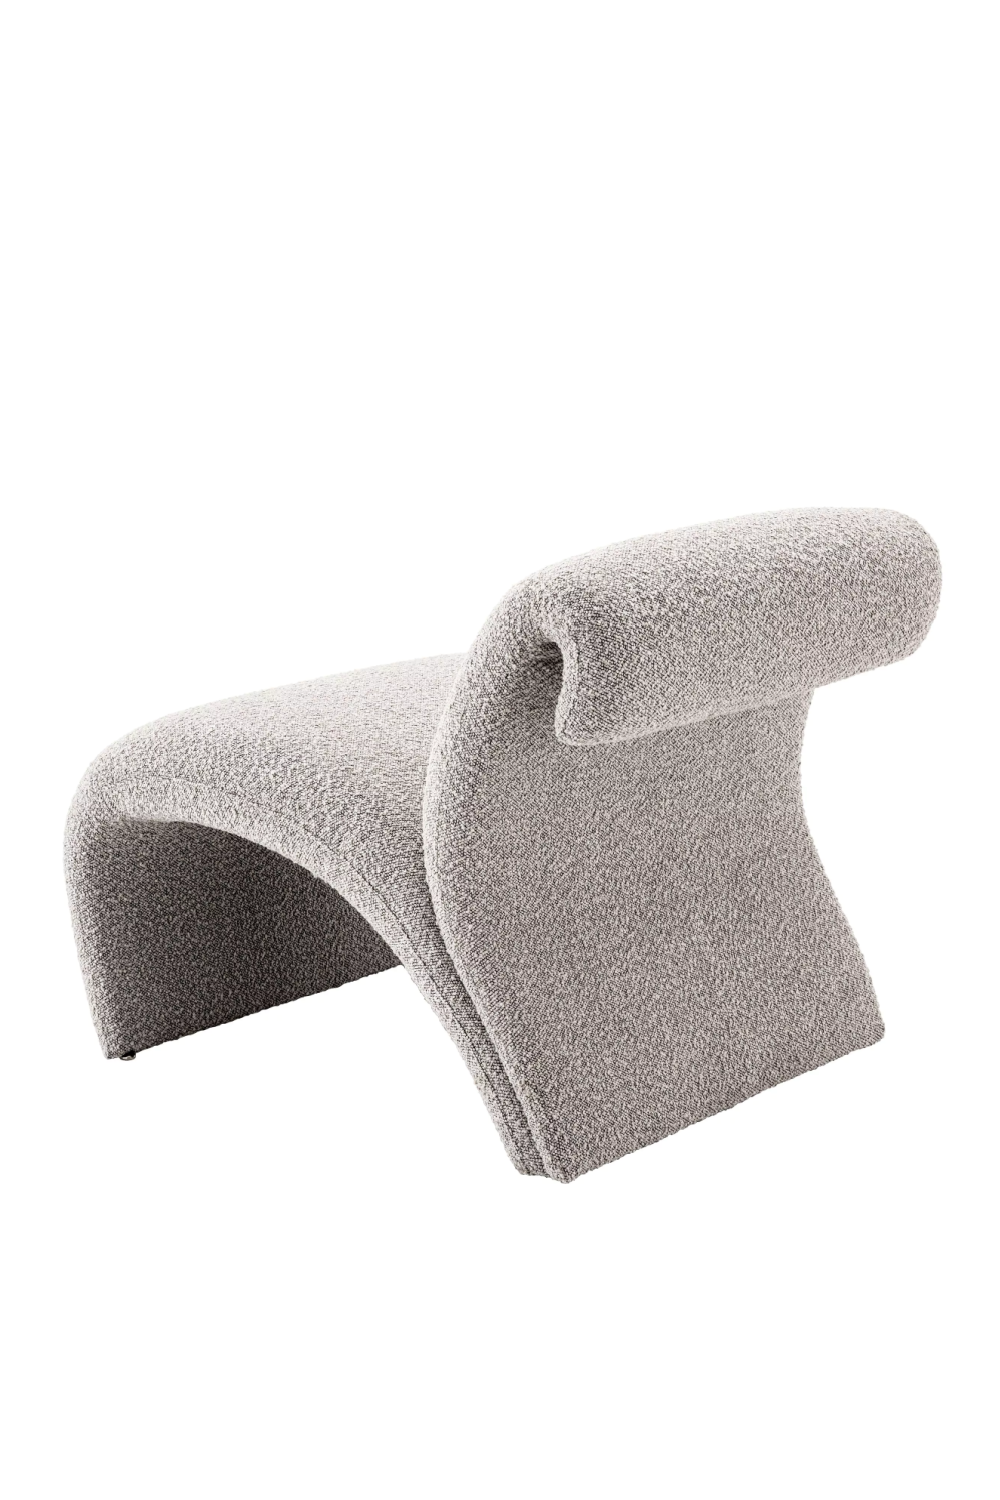 Bouclé Free Flowing Accent Chair | Eichholtz Vignola | Oroa.com